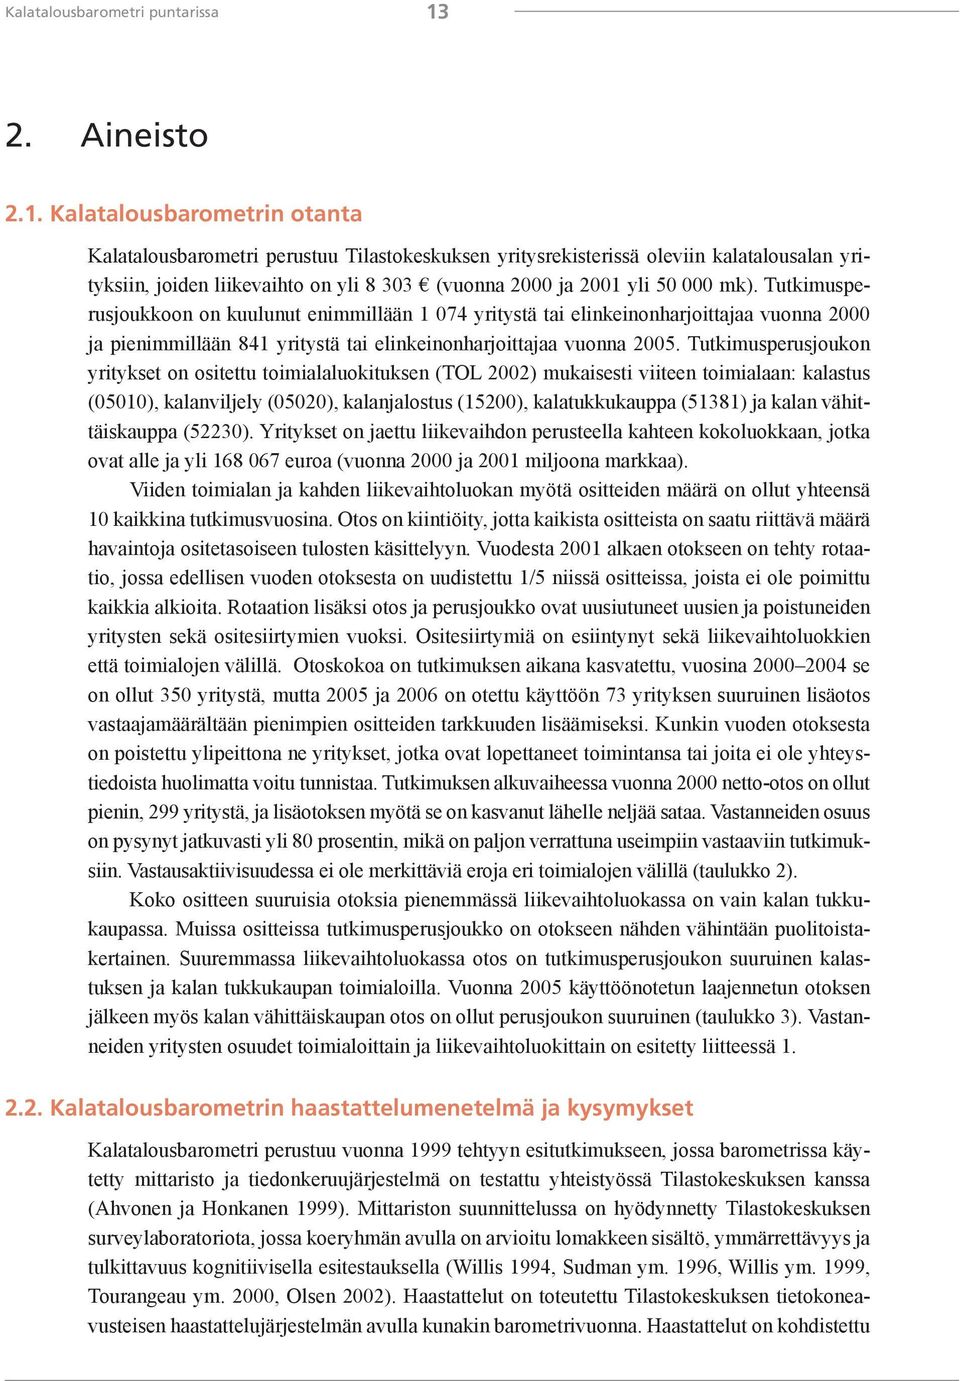 Kalatalousbarometrin otanta Kalatalousbarometri perustuu Tilastokeskuksen yritysrekisterissä oleviin kalatalousalan yrityksiin, joiden liikevaihto on yli 8 303 (vuonna 2000 ja 2001 yli 50 000 mk).